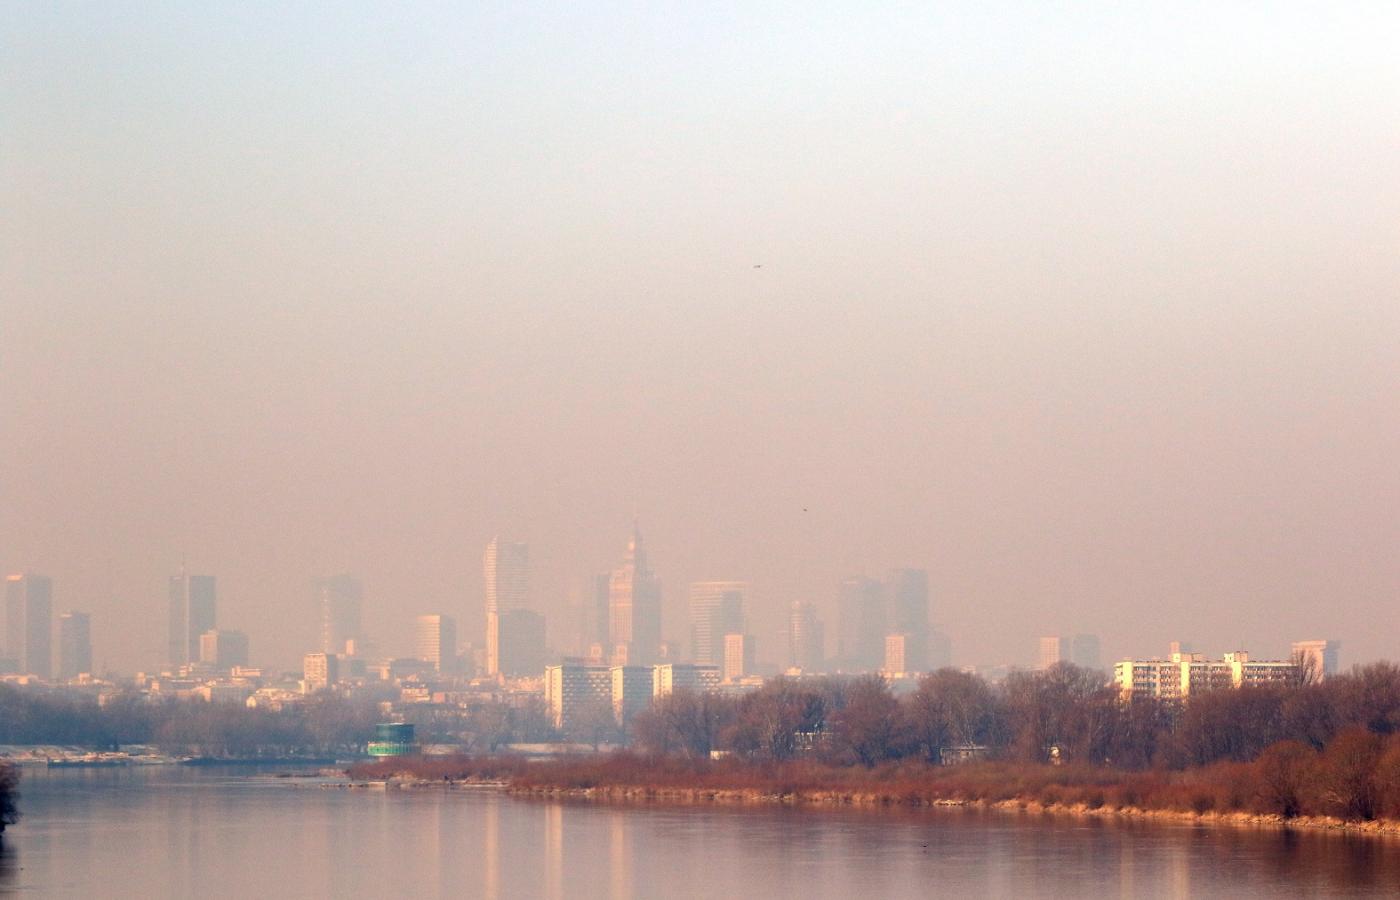 Smog nad Warszawą